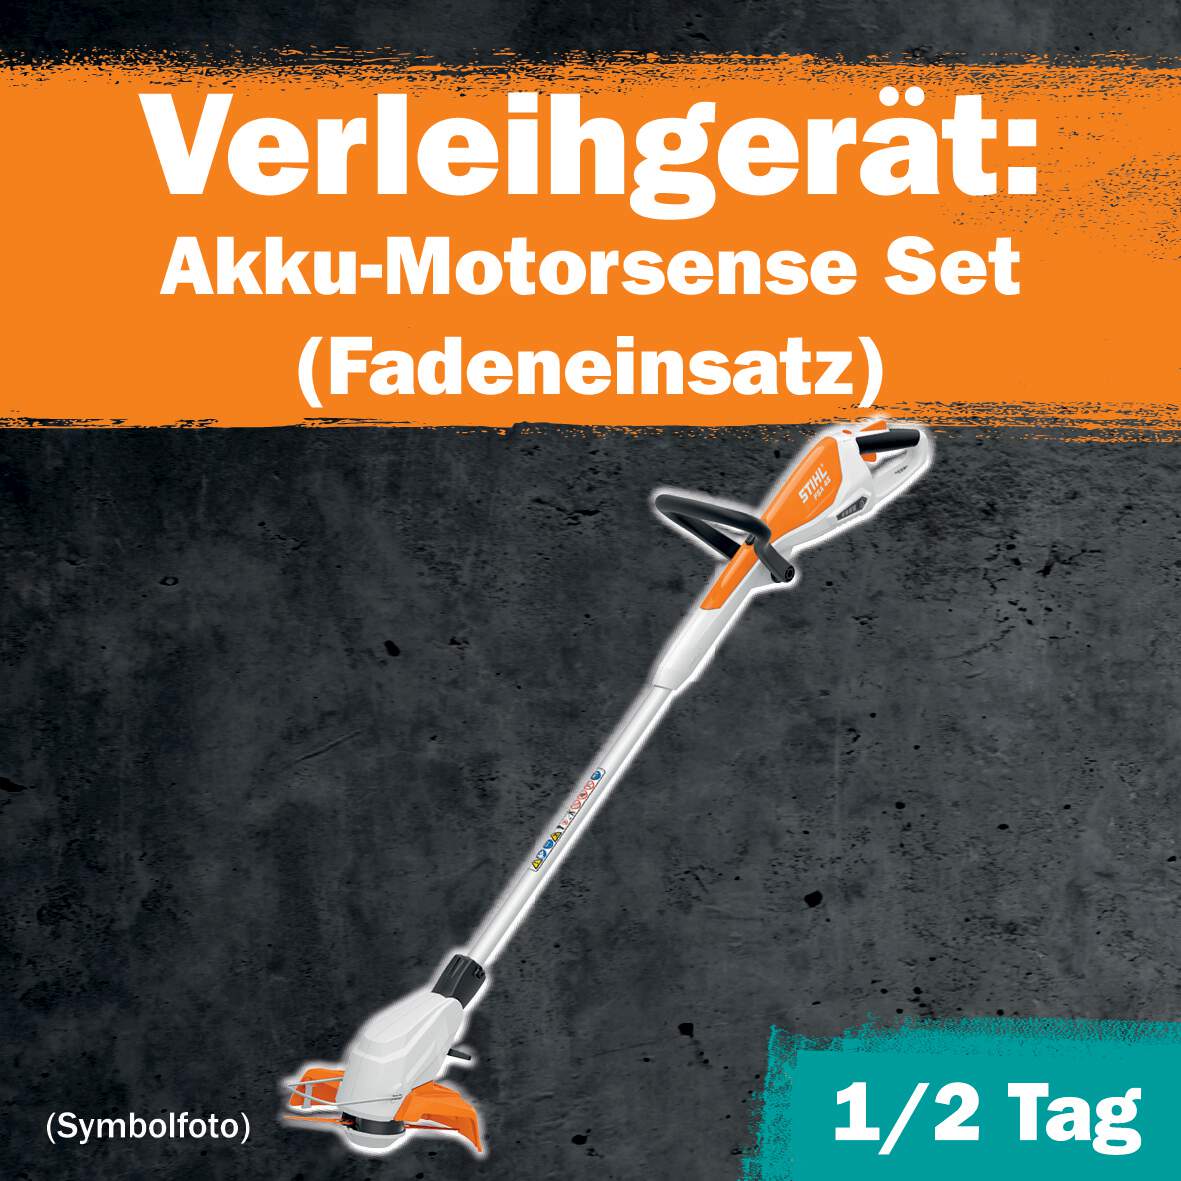 1288686 - Akku-Motorsense Set 1/2 Tag